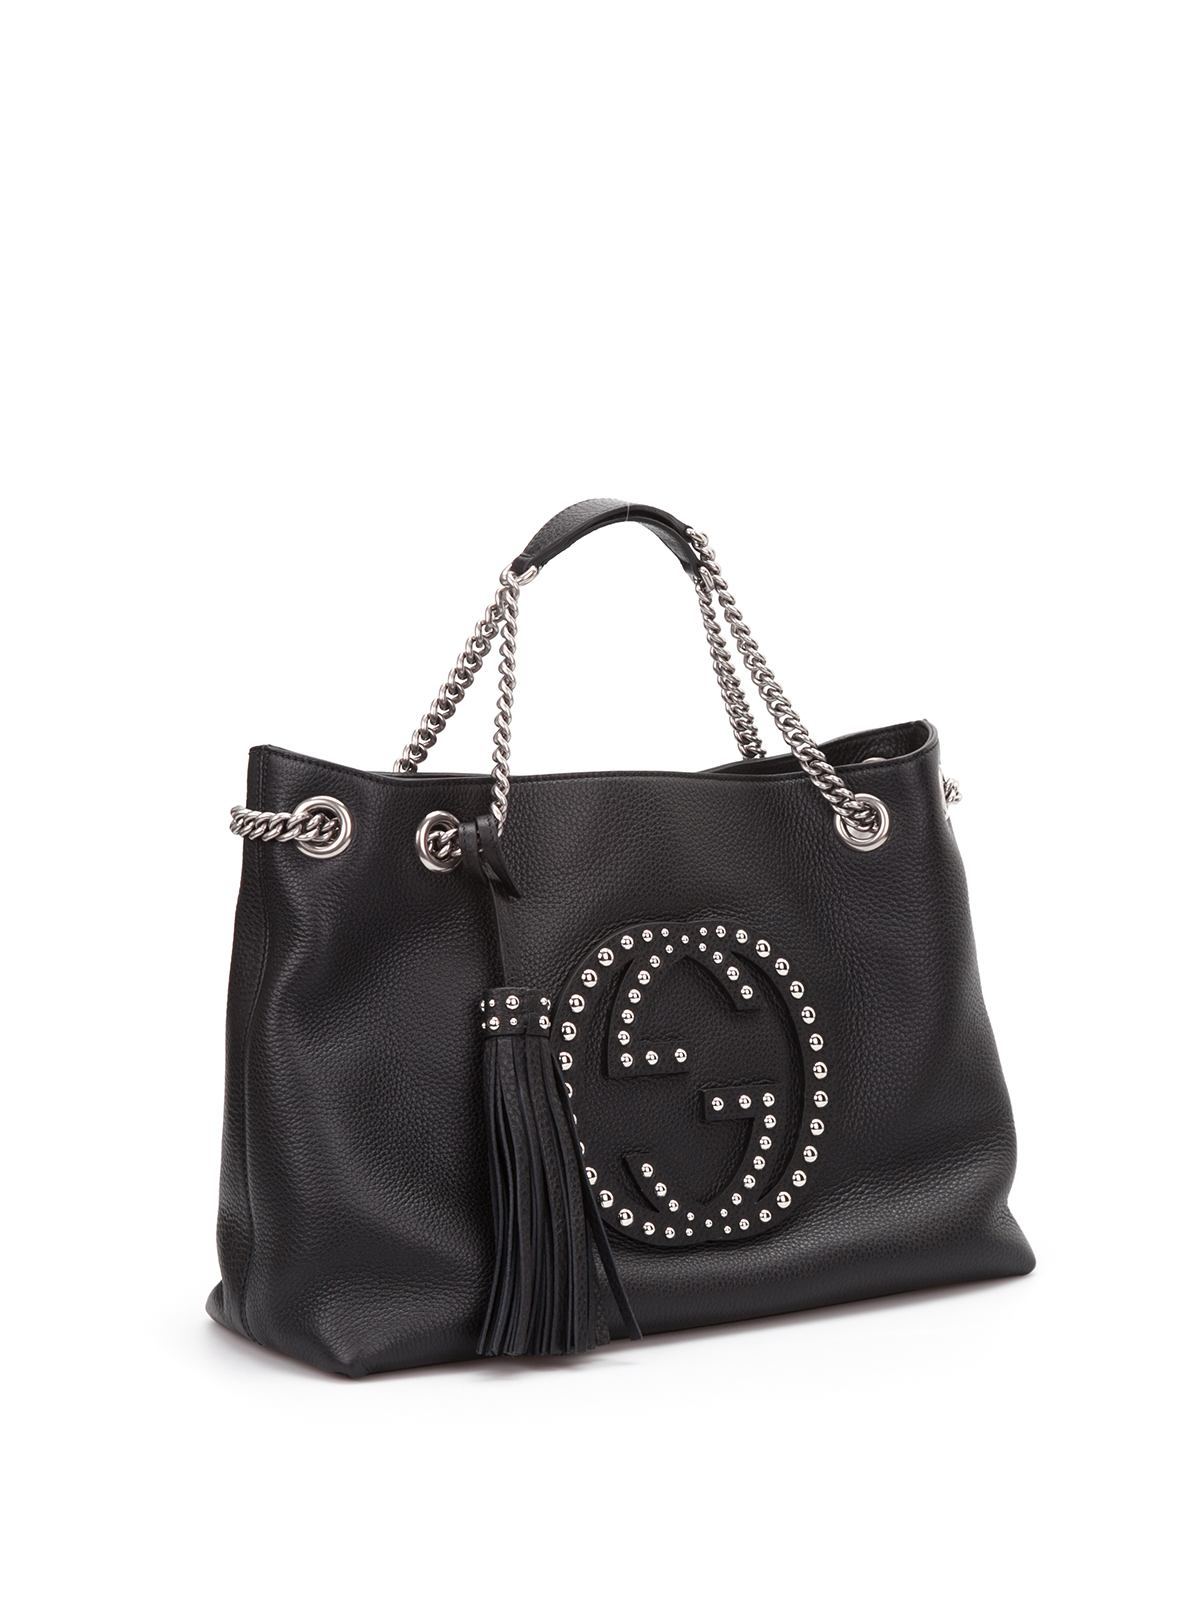 Totes bags Gucci - Soho studded leather shoulder bag - 308982A88EN1000